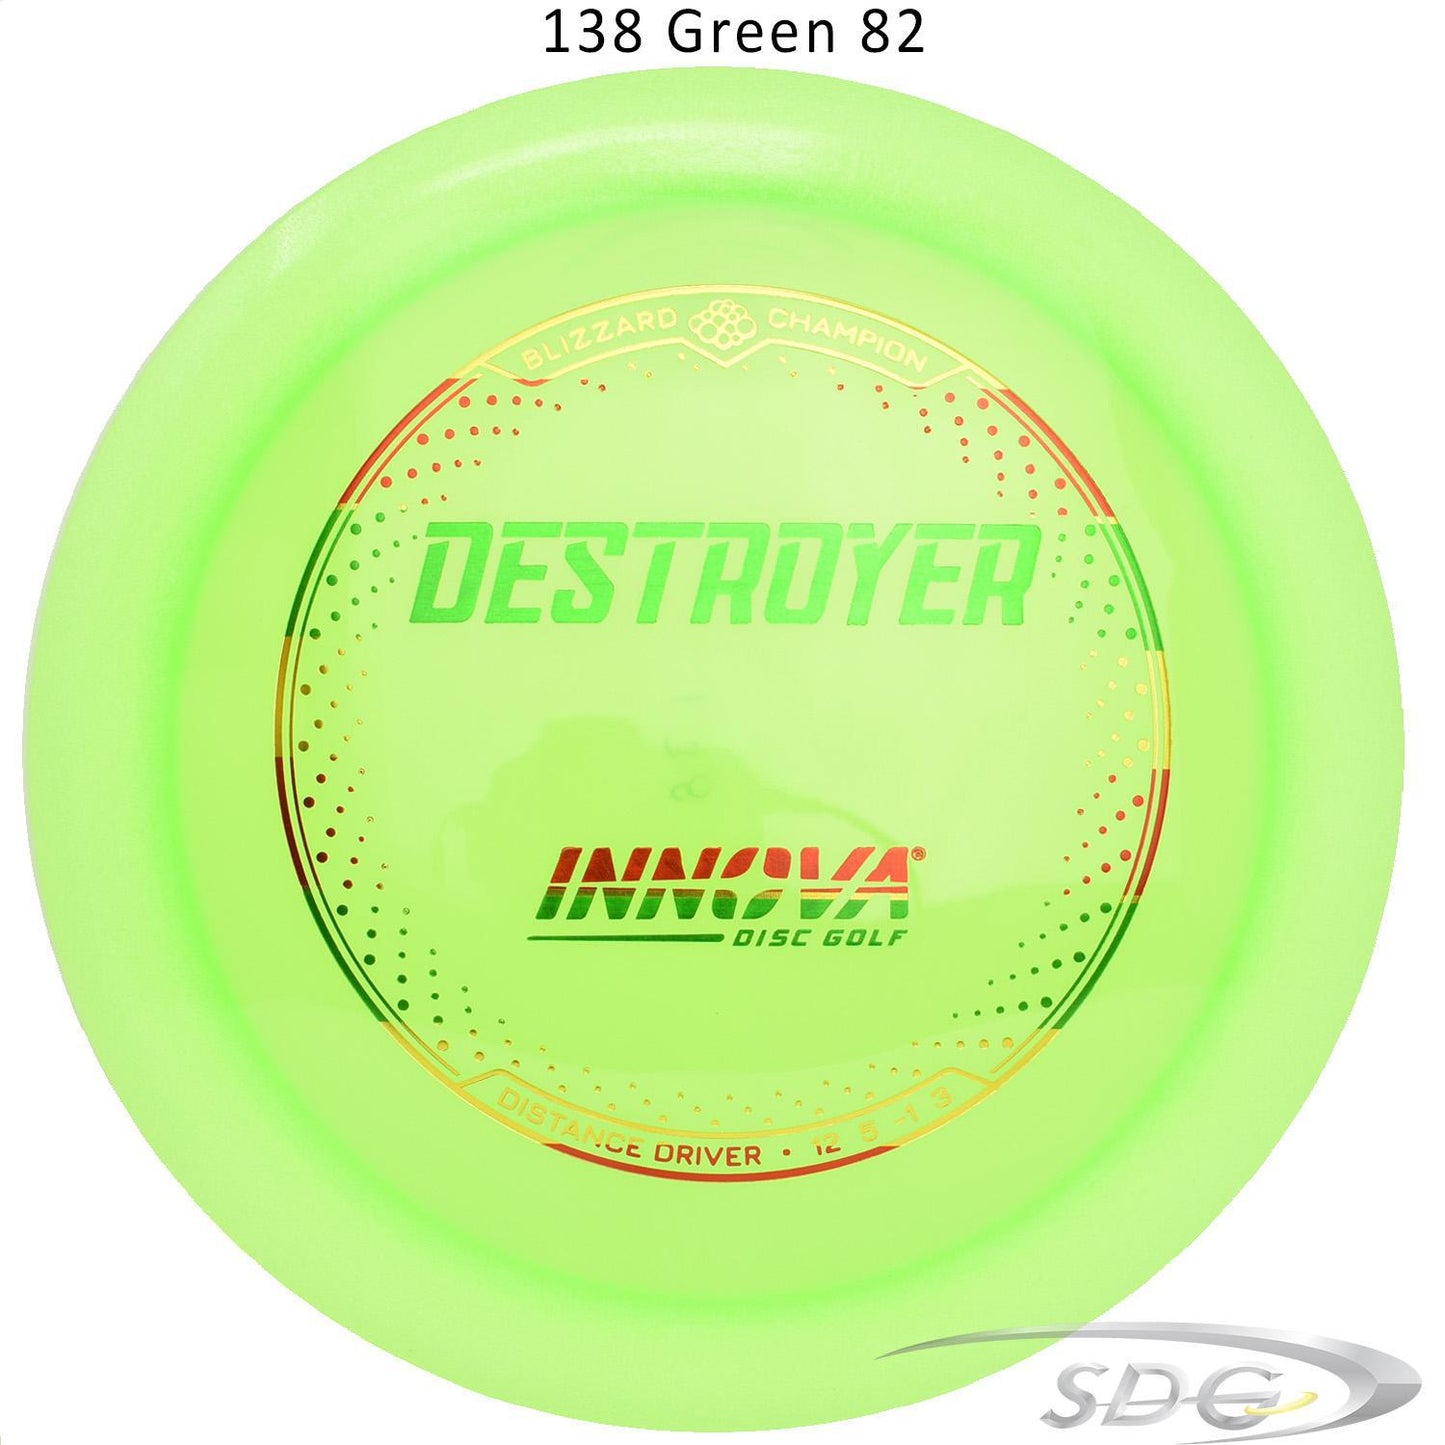 innova-blizzard-champion-destroyer-disc-golf-distance-driver 138 Green 82 